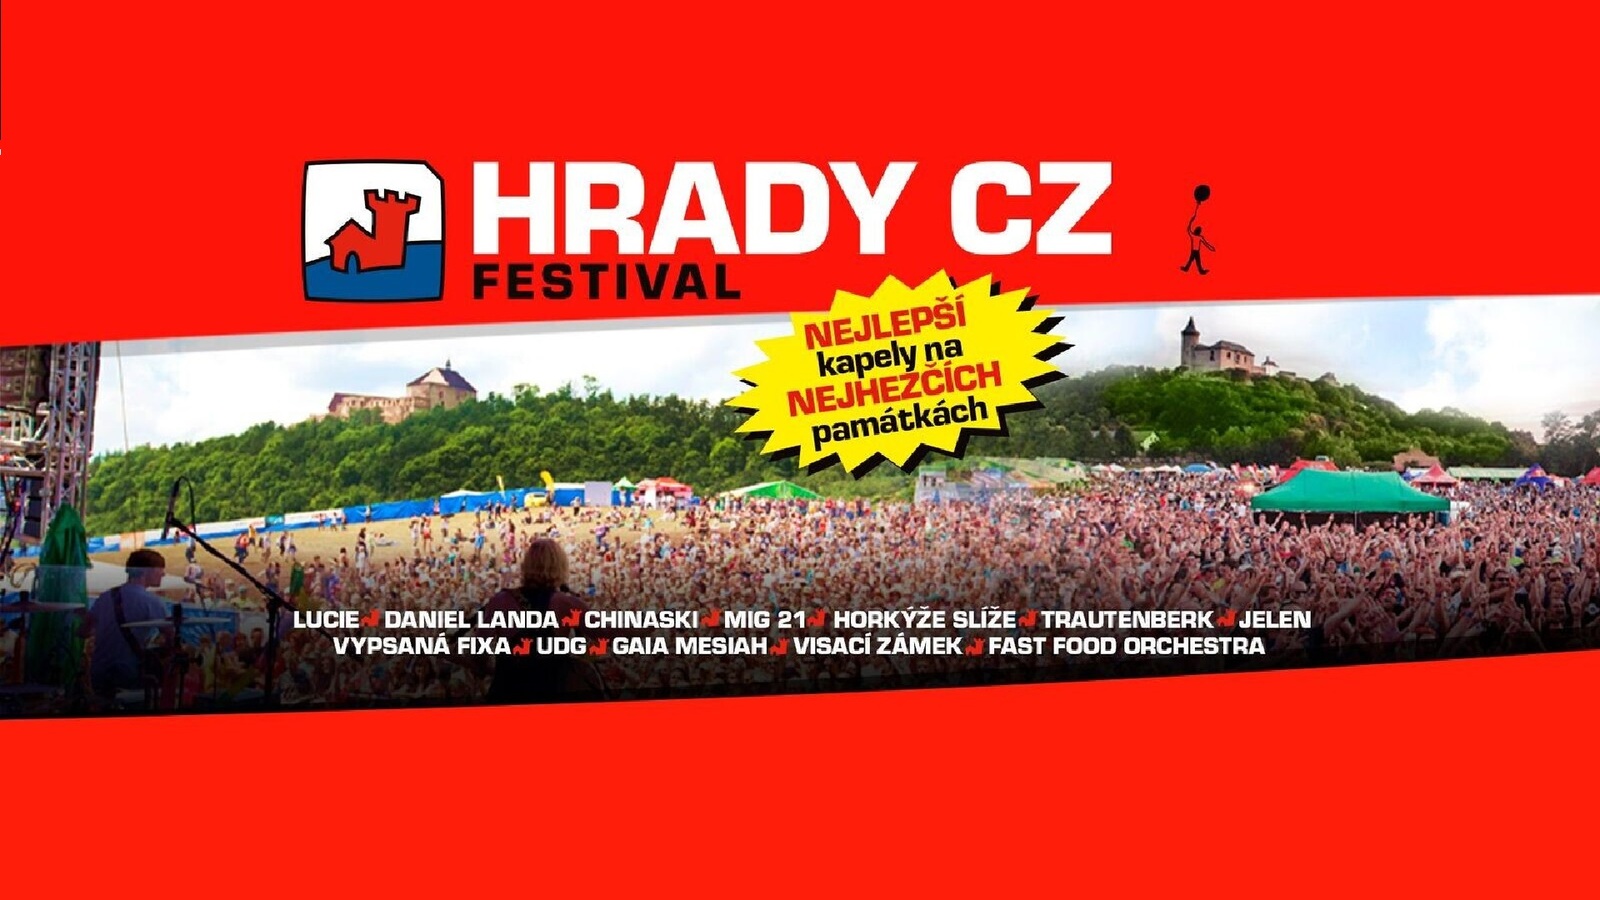 Užijte si festival Hrady CZ na Bouzově a v Hradci nad Moravicí s Hitrádiem Orion a ČPZP!